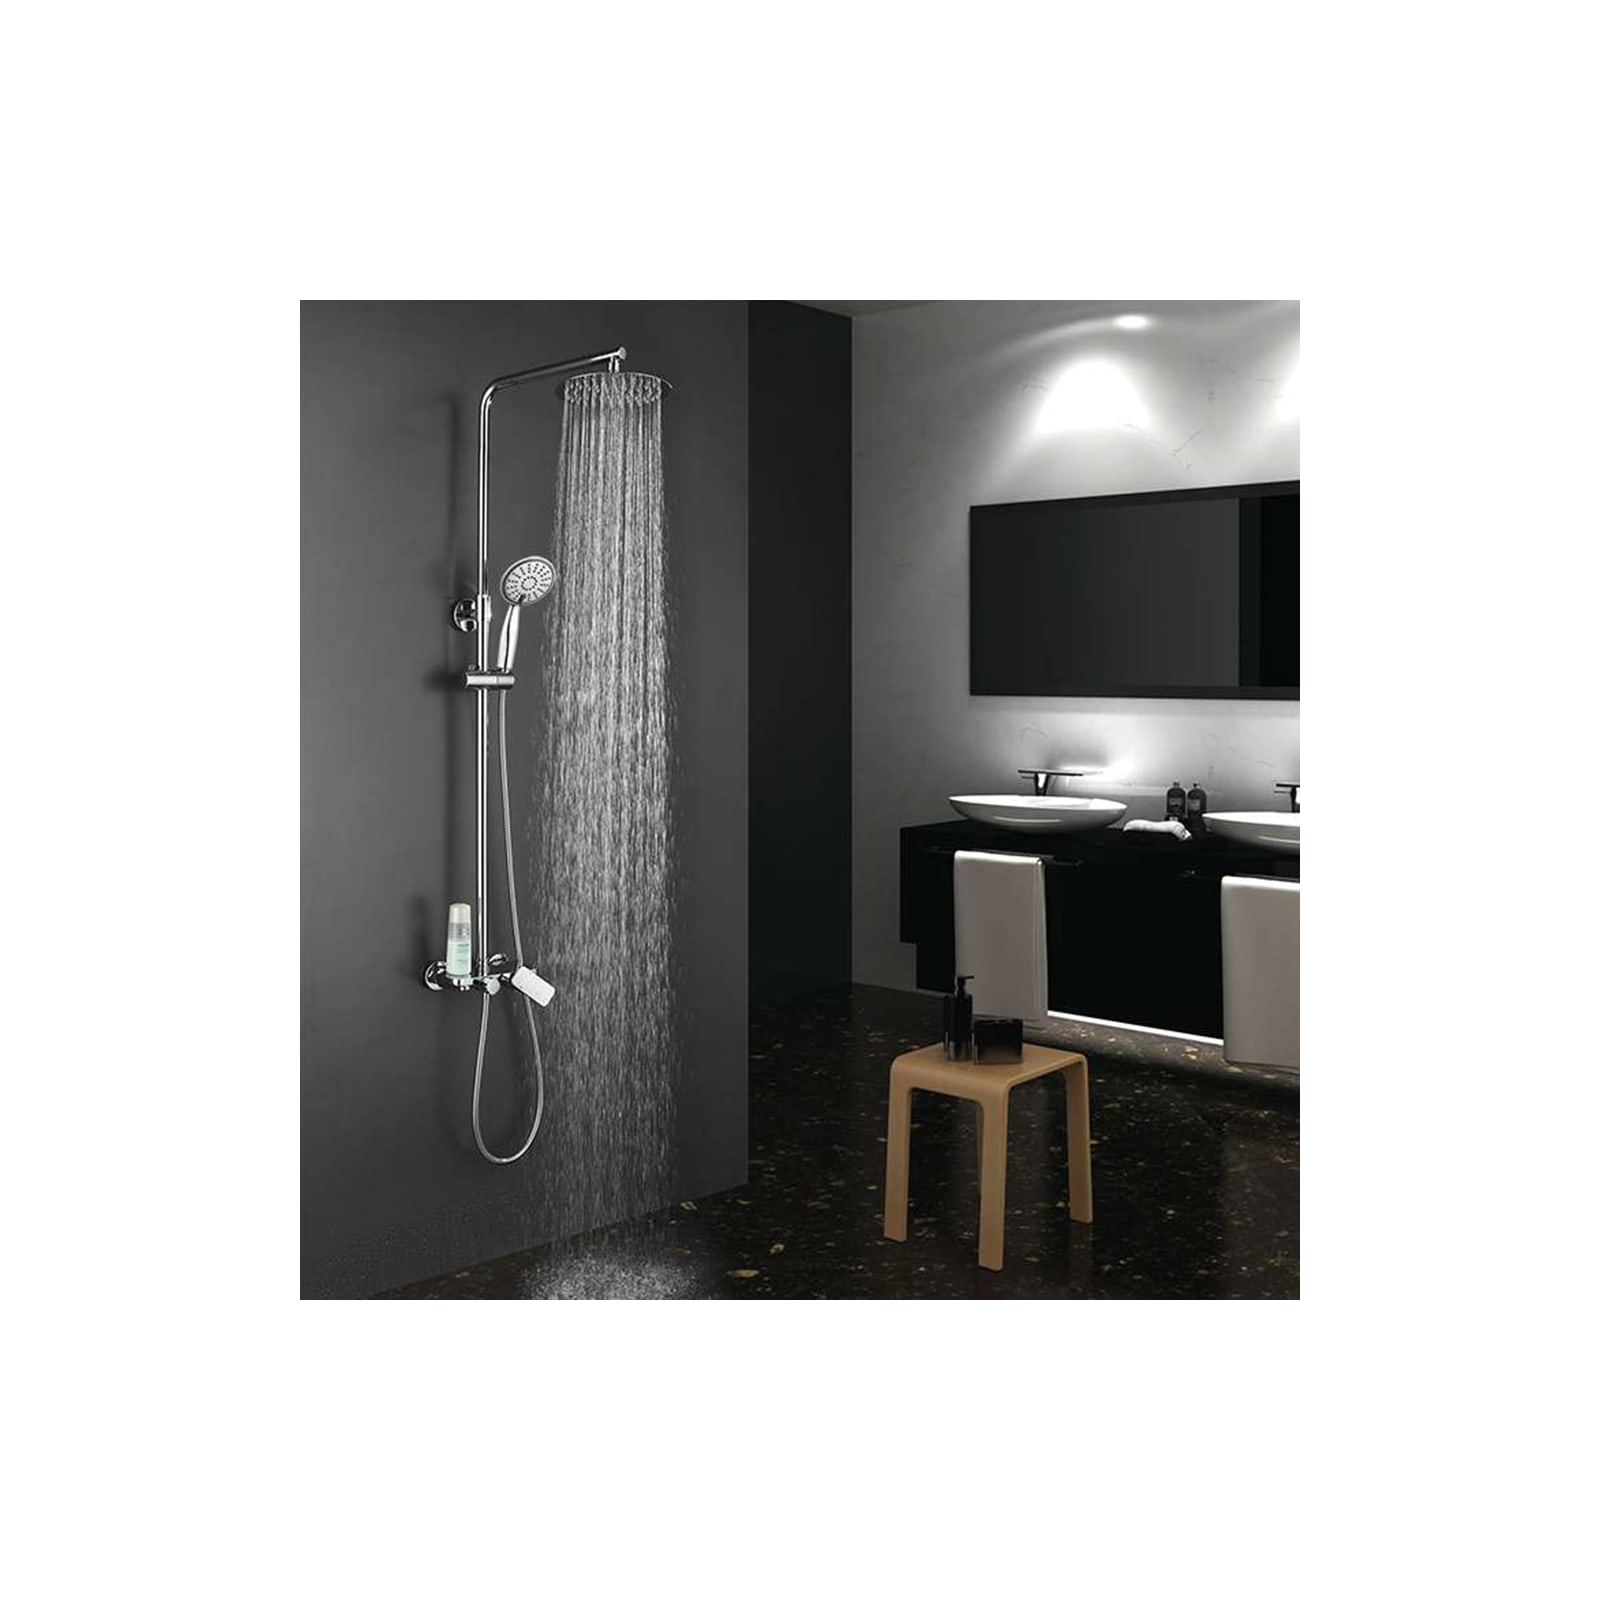 Columna de ducha monomando redonda modelo DUA con repisa integrada, tubo  redondo extensible regulable en altura de 80 a 120 cm. Ducha mano para